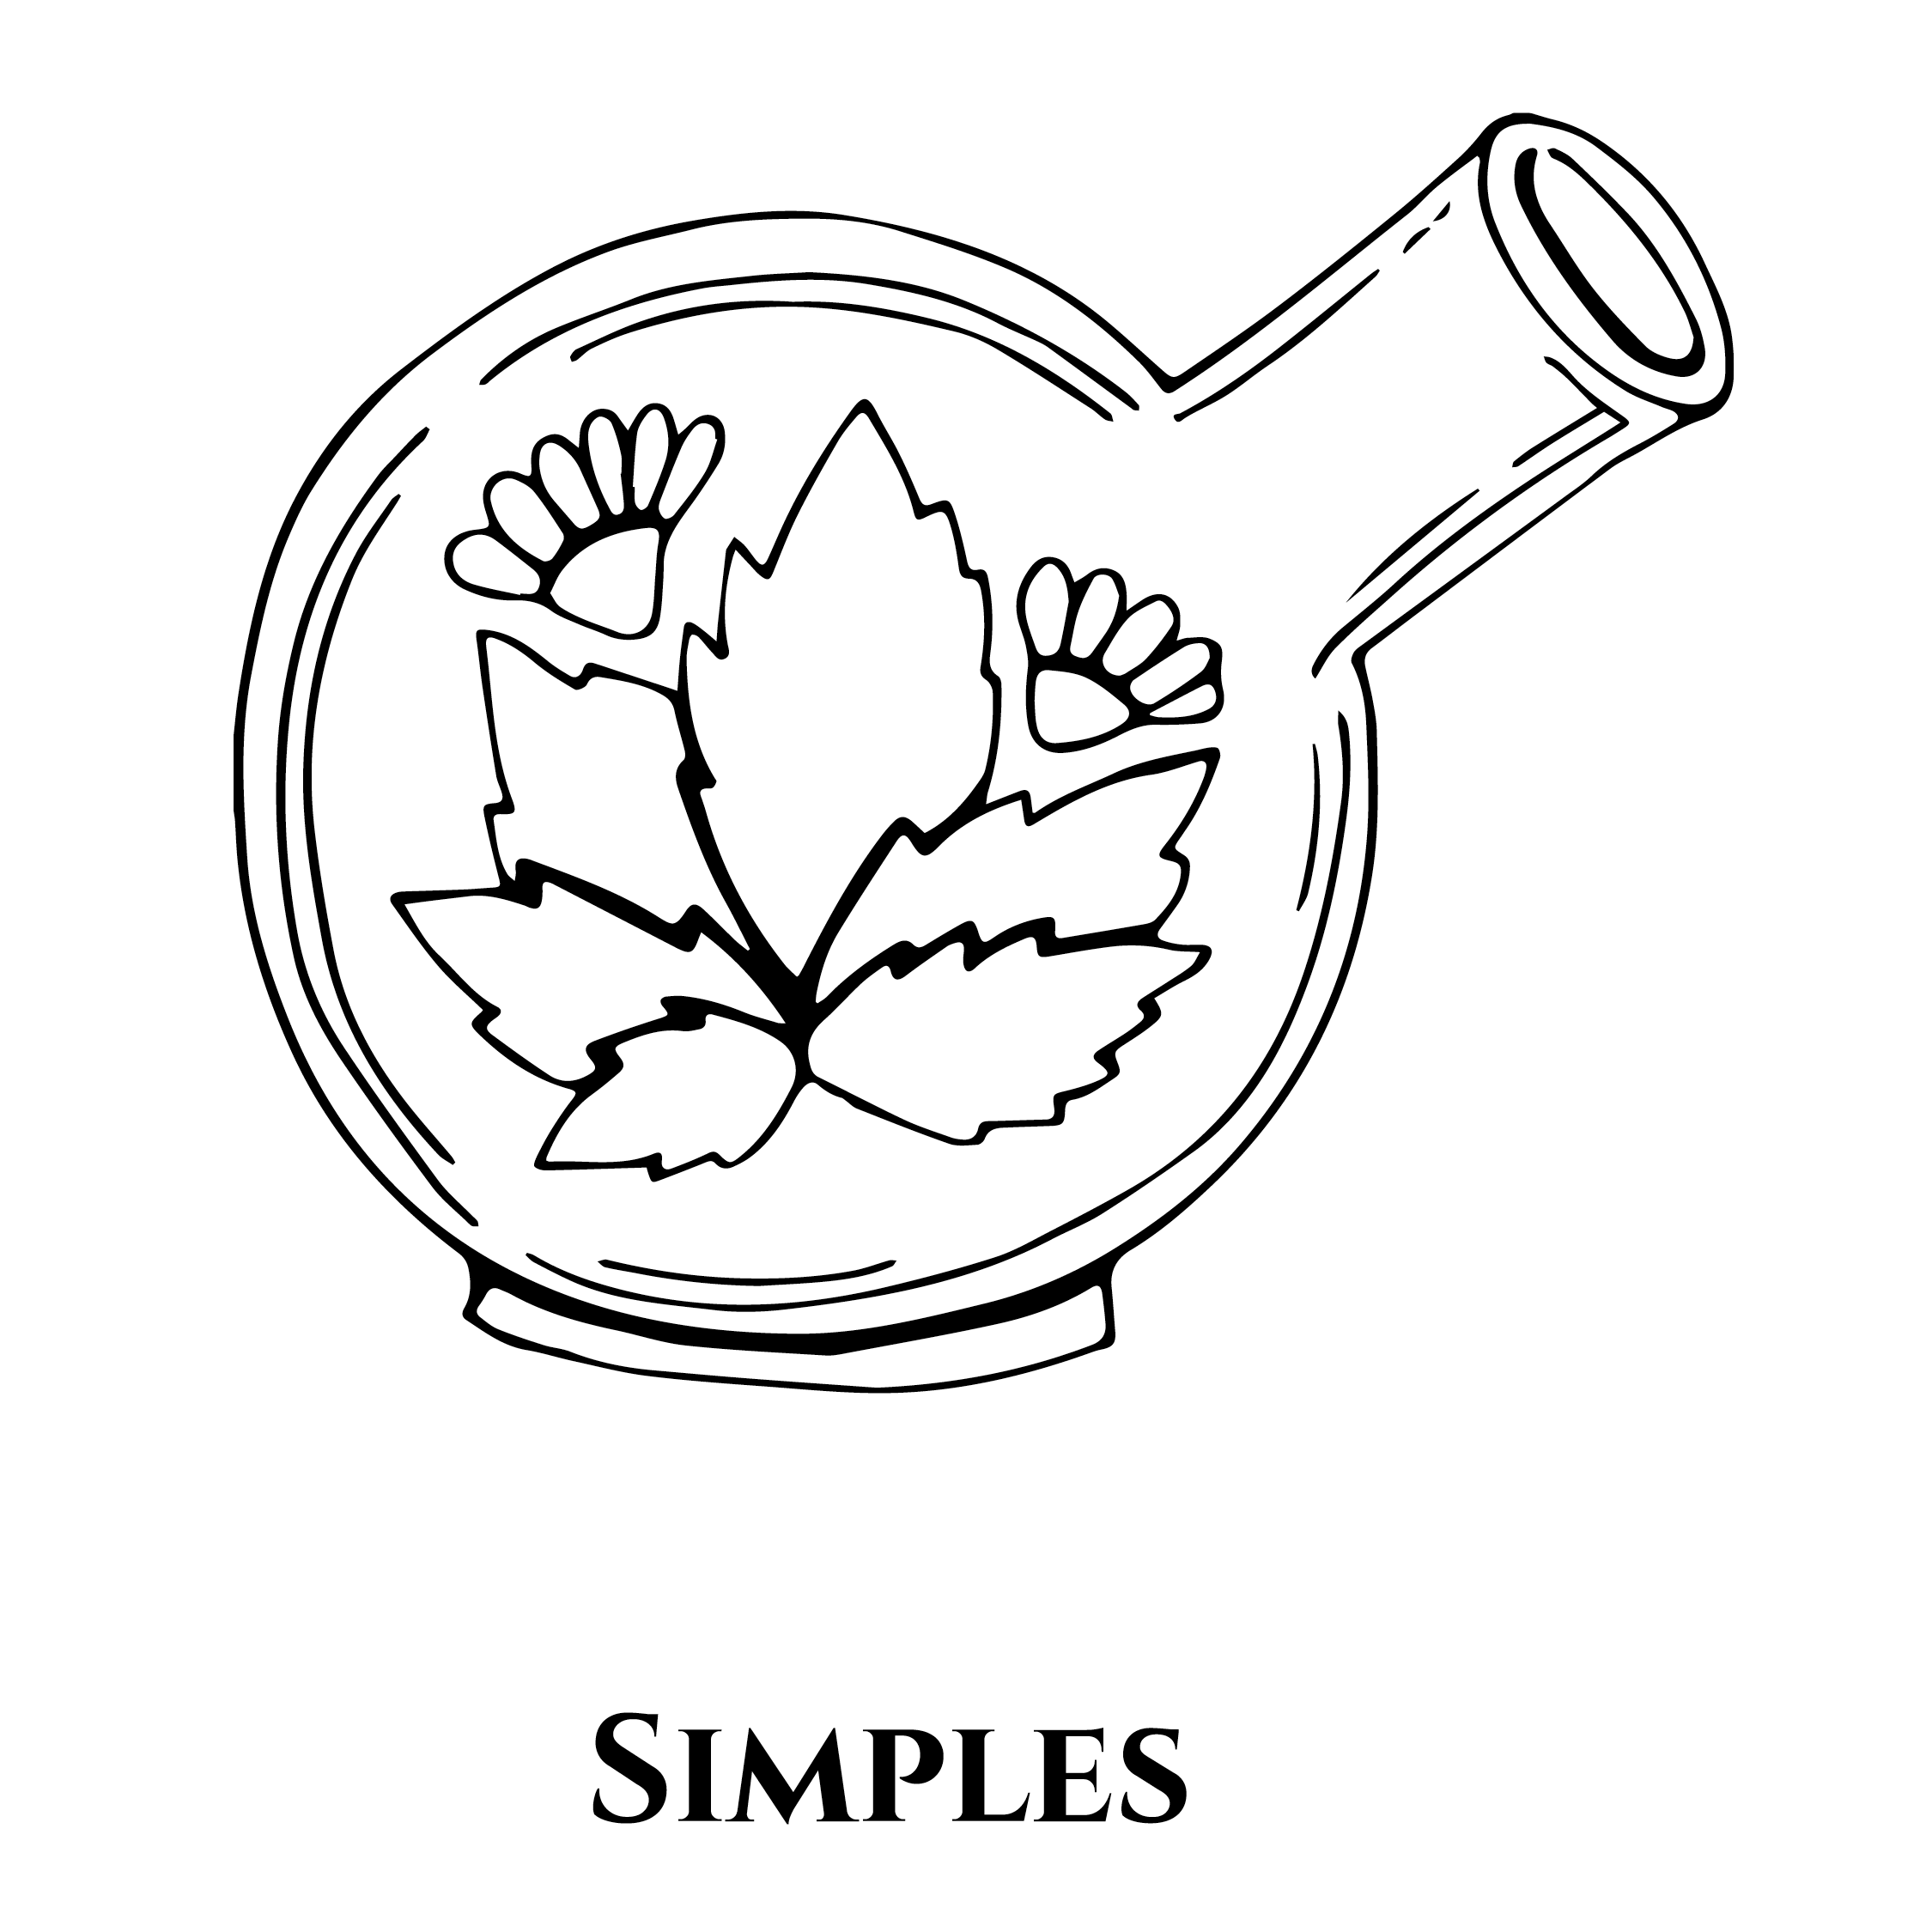 Icône représentant une fiole ronde de laboratoire contenant une plante, pour représenter le fait que les formules des produits OPHÉO sont simples et efficaces bien que naturelles.